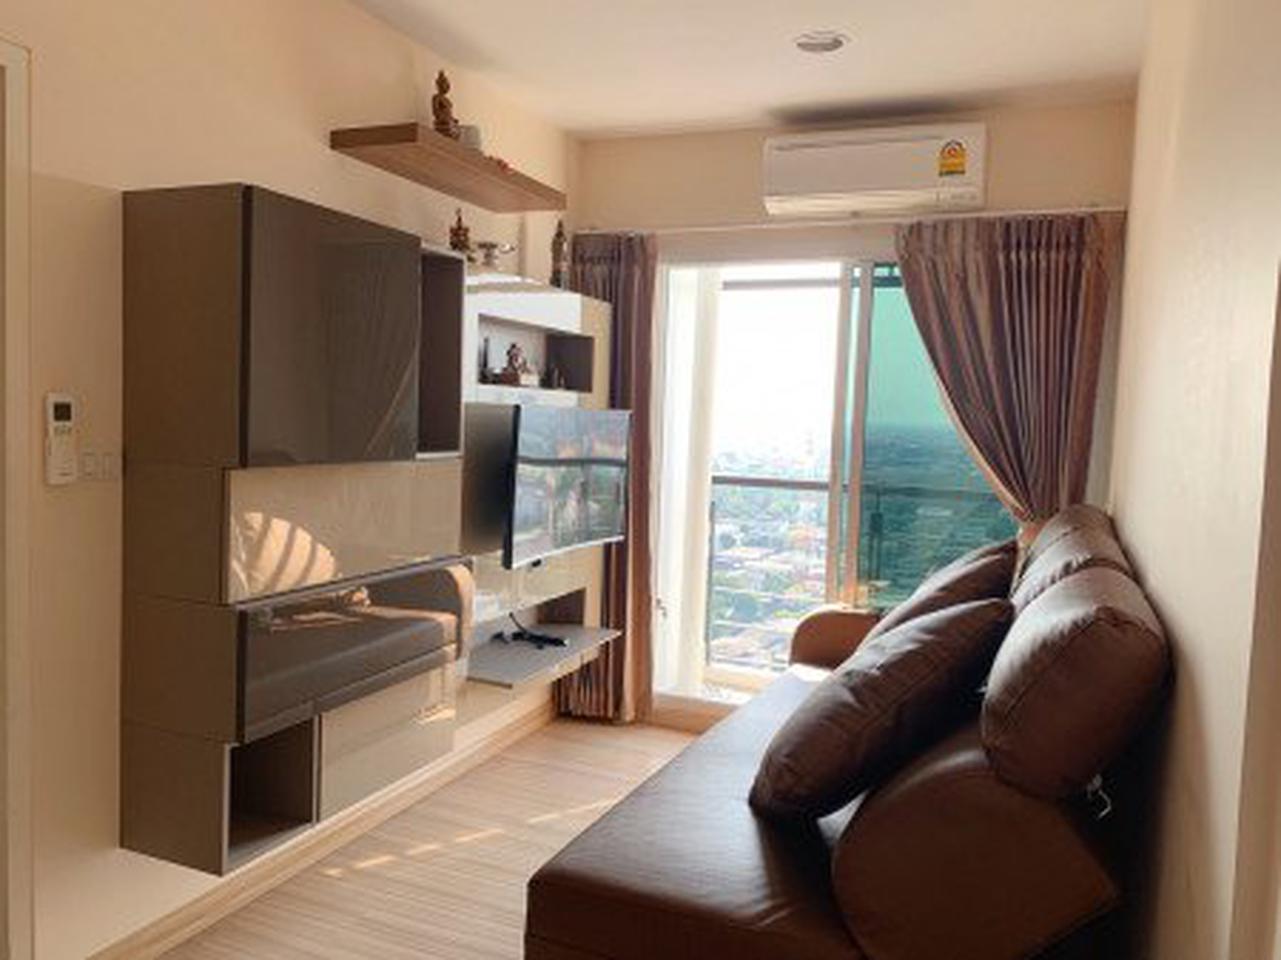 ขาย คอนโด ชั้นสูง วิวสวย เฟอร์SB ใหม่ครบ Bangkok Horizon รัชดา-ท่าพระ 32.80 ตรม. 1 ห้องนอน ราคาดีลพิเศษสุด ถูกสุด รูปที่ 2